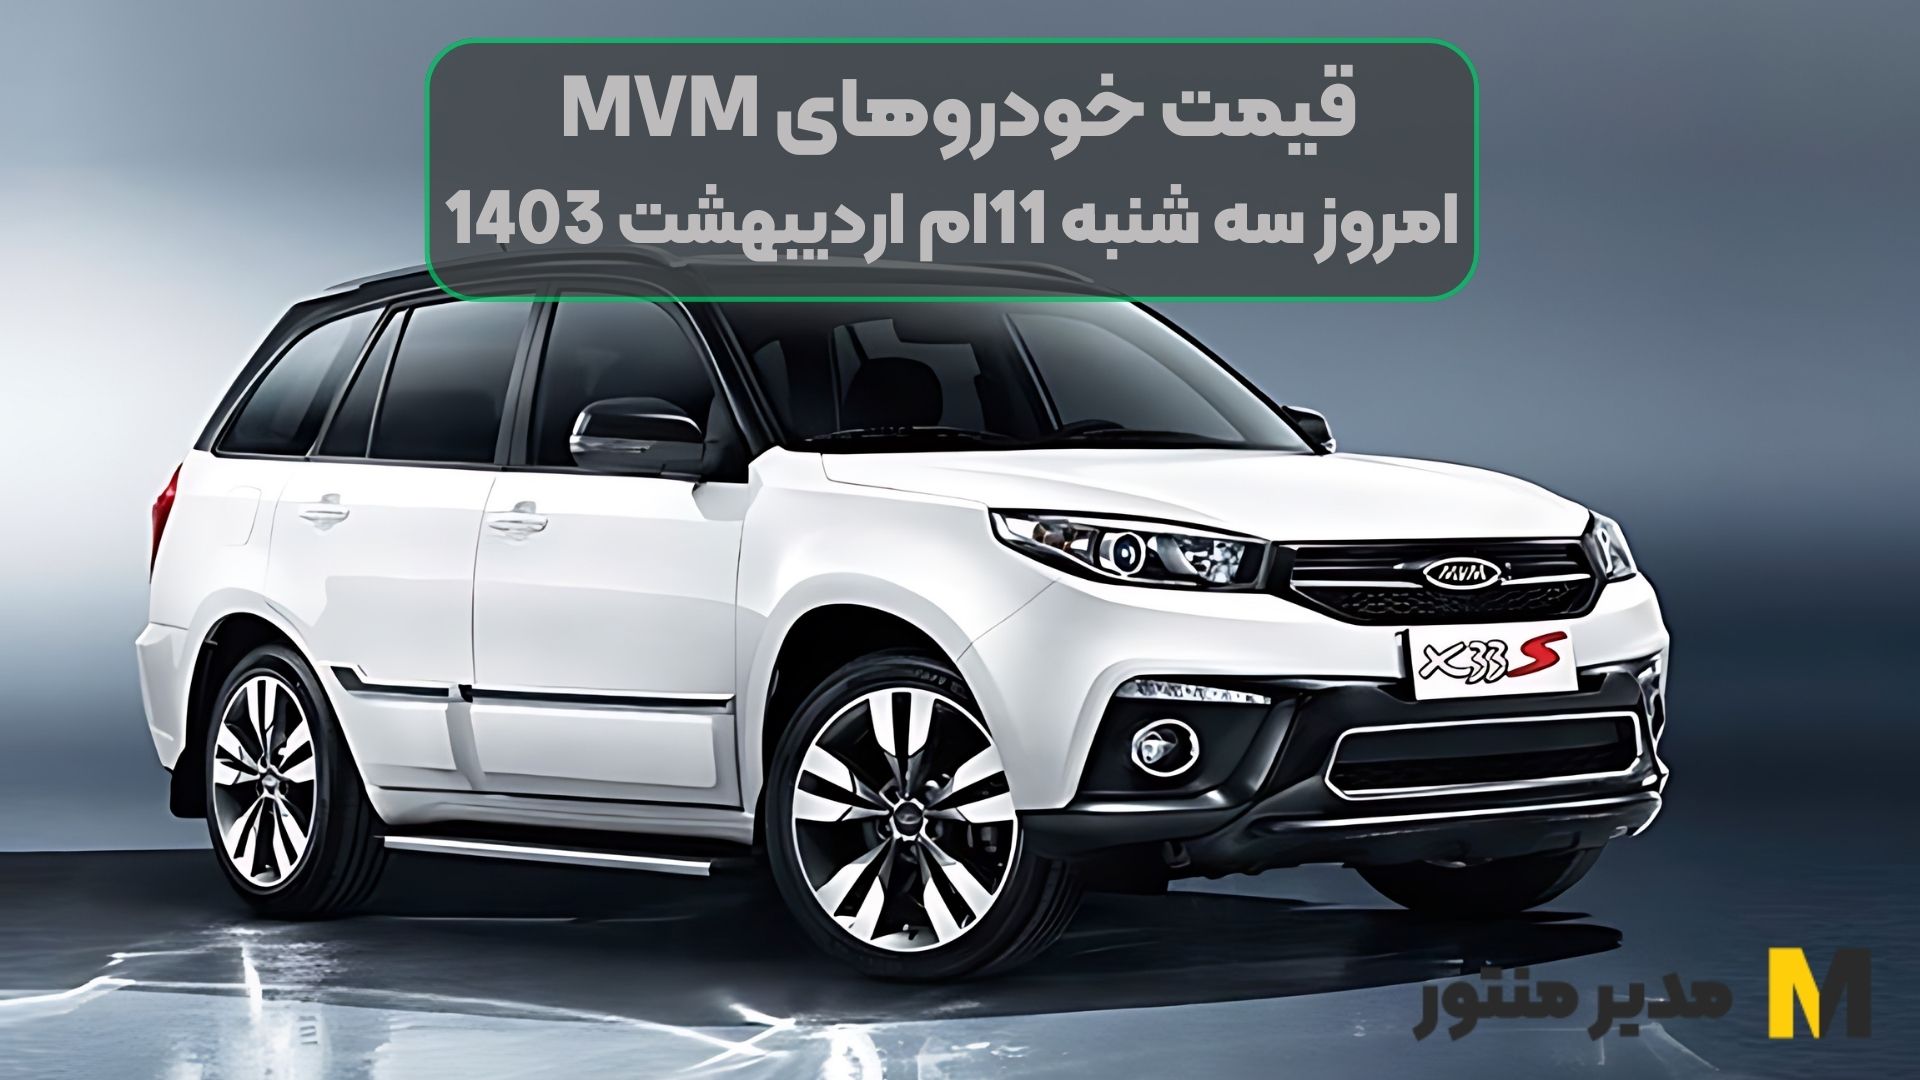 قیمت خودروهای MVM امروز سه شنبه 11ام اردیبهشت 1403